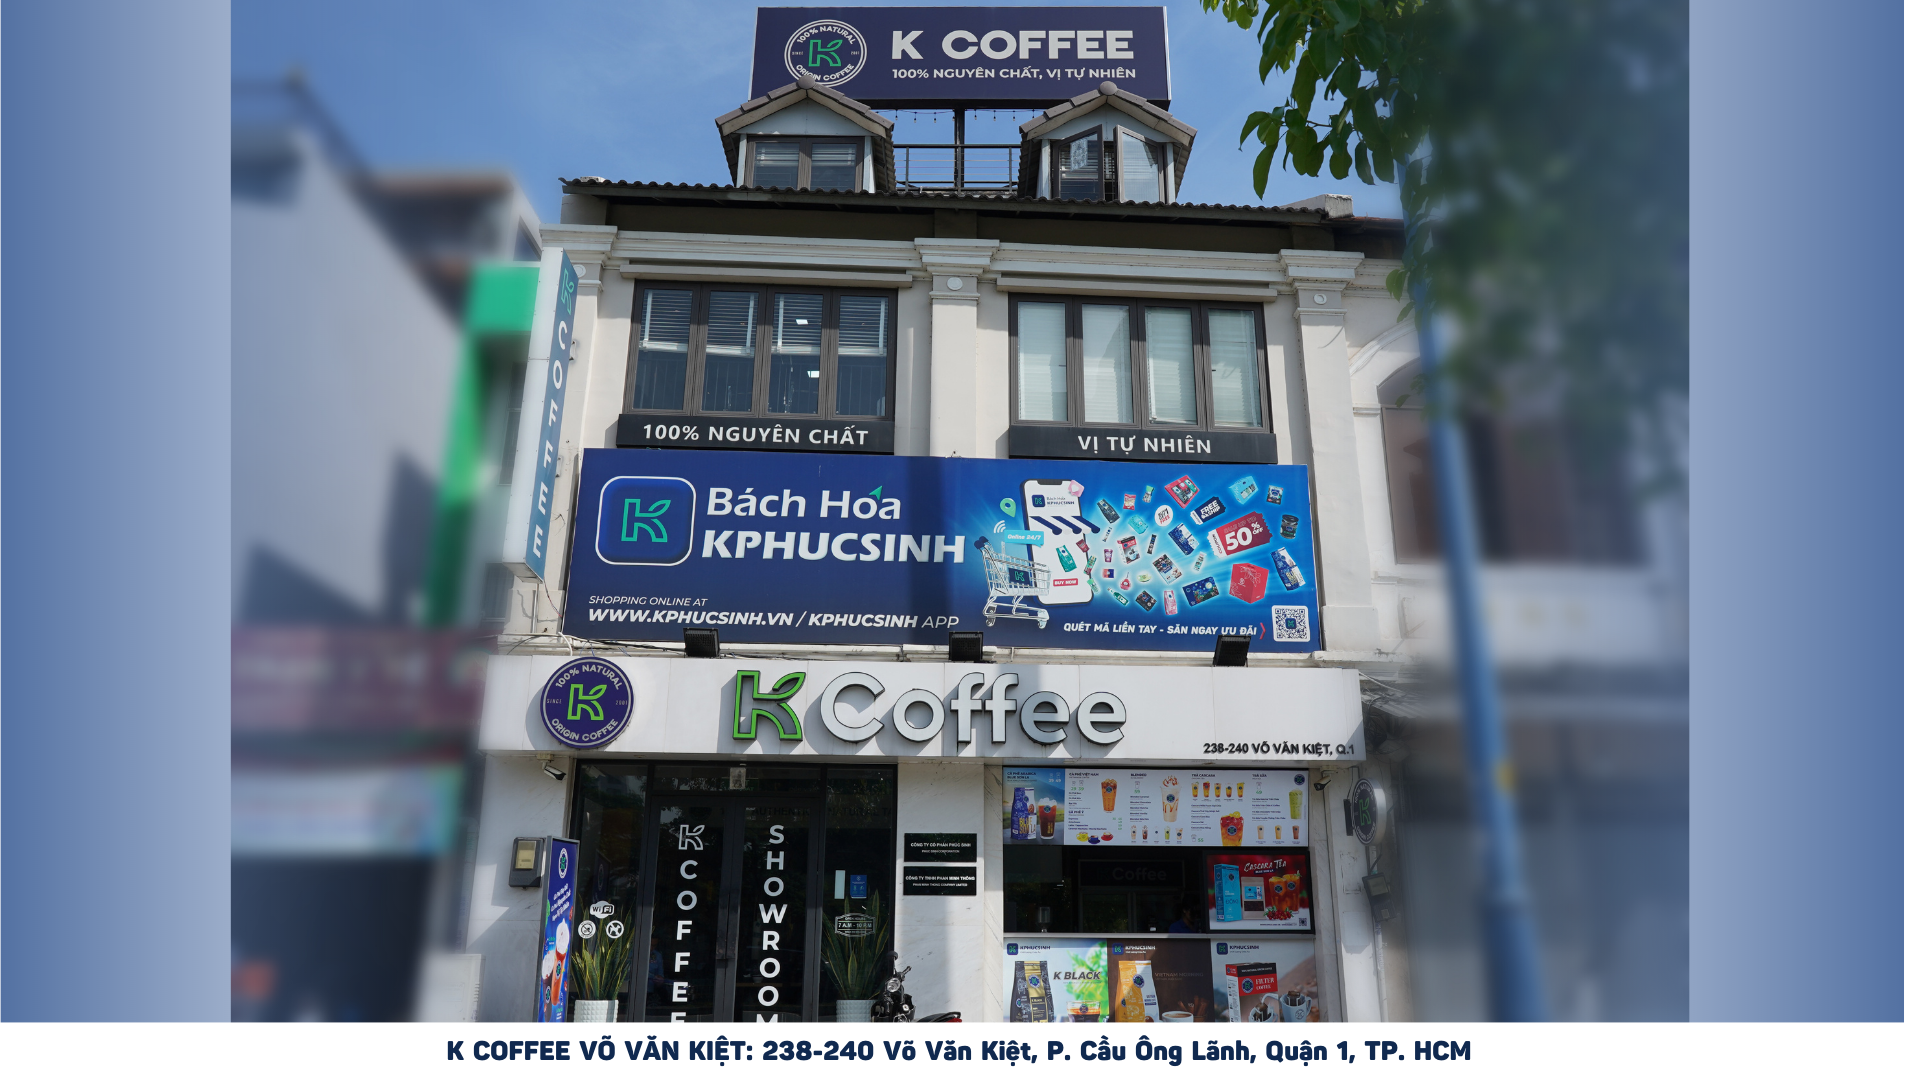 Ra mắt phòng trưng bày thương hiệu cà phê K cOFFEE